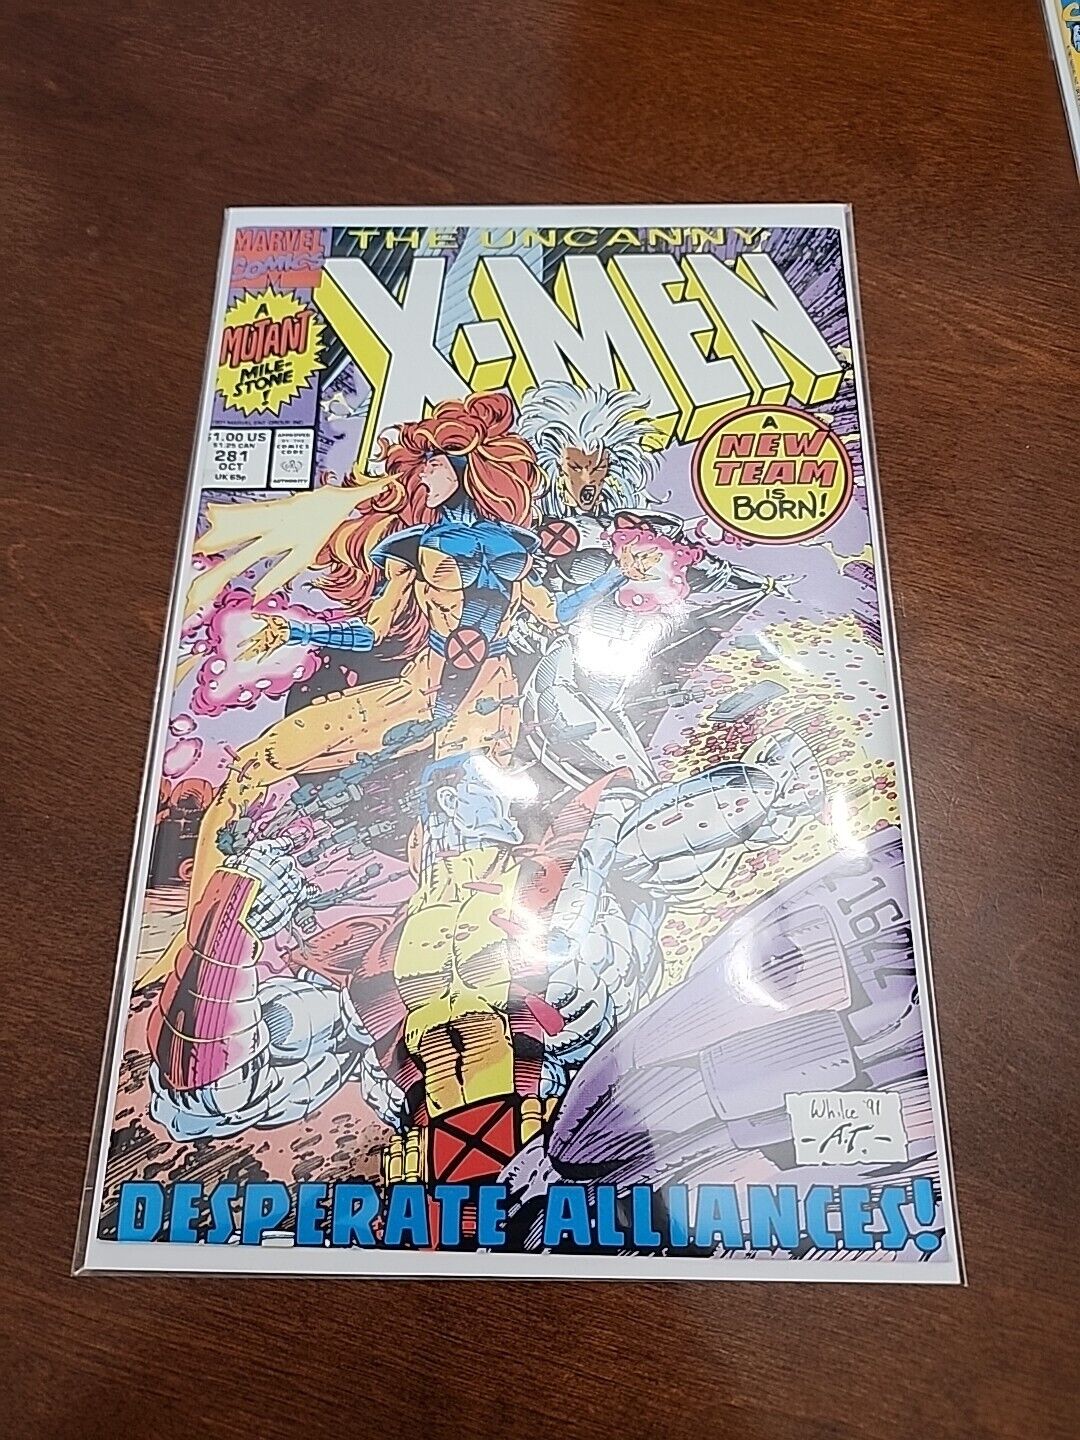 The Uncanny X-Men #281 (Marvel Comics October 1991)